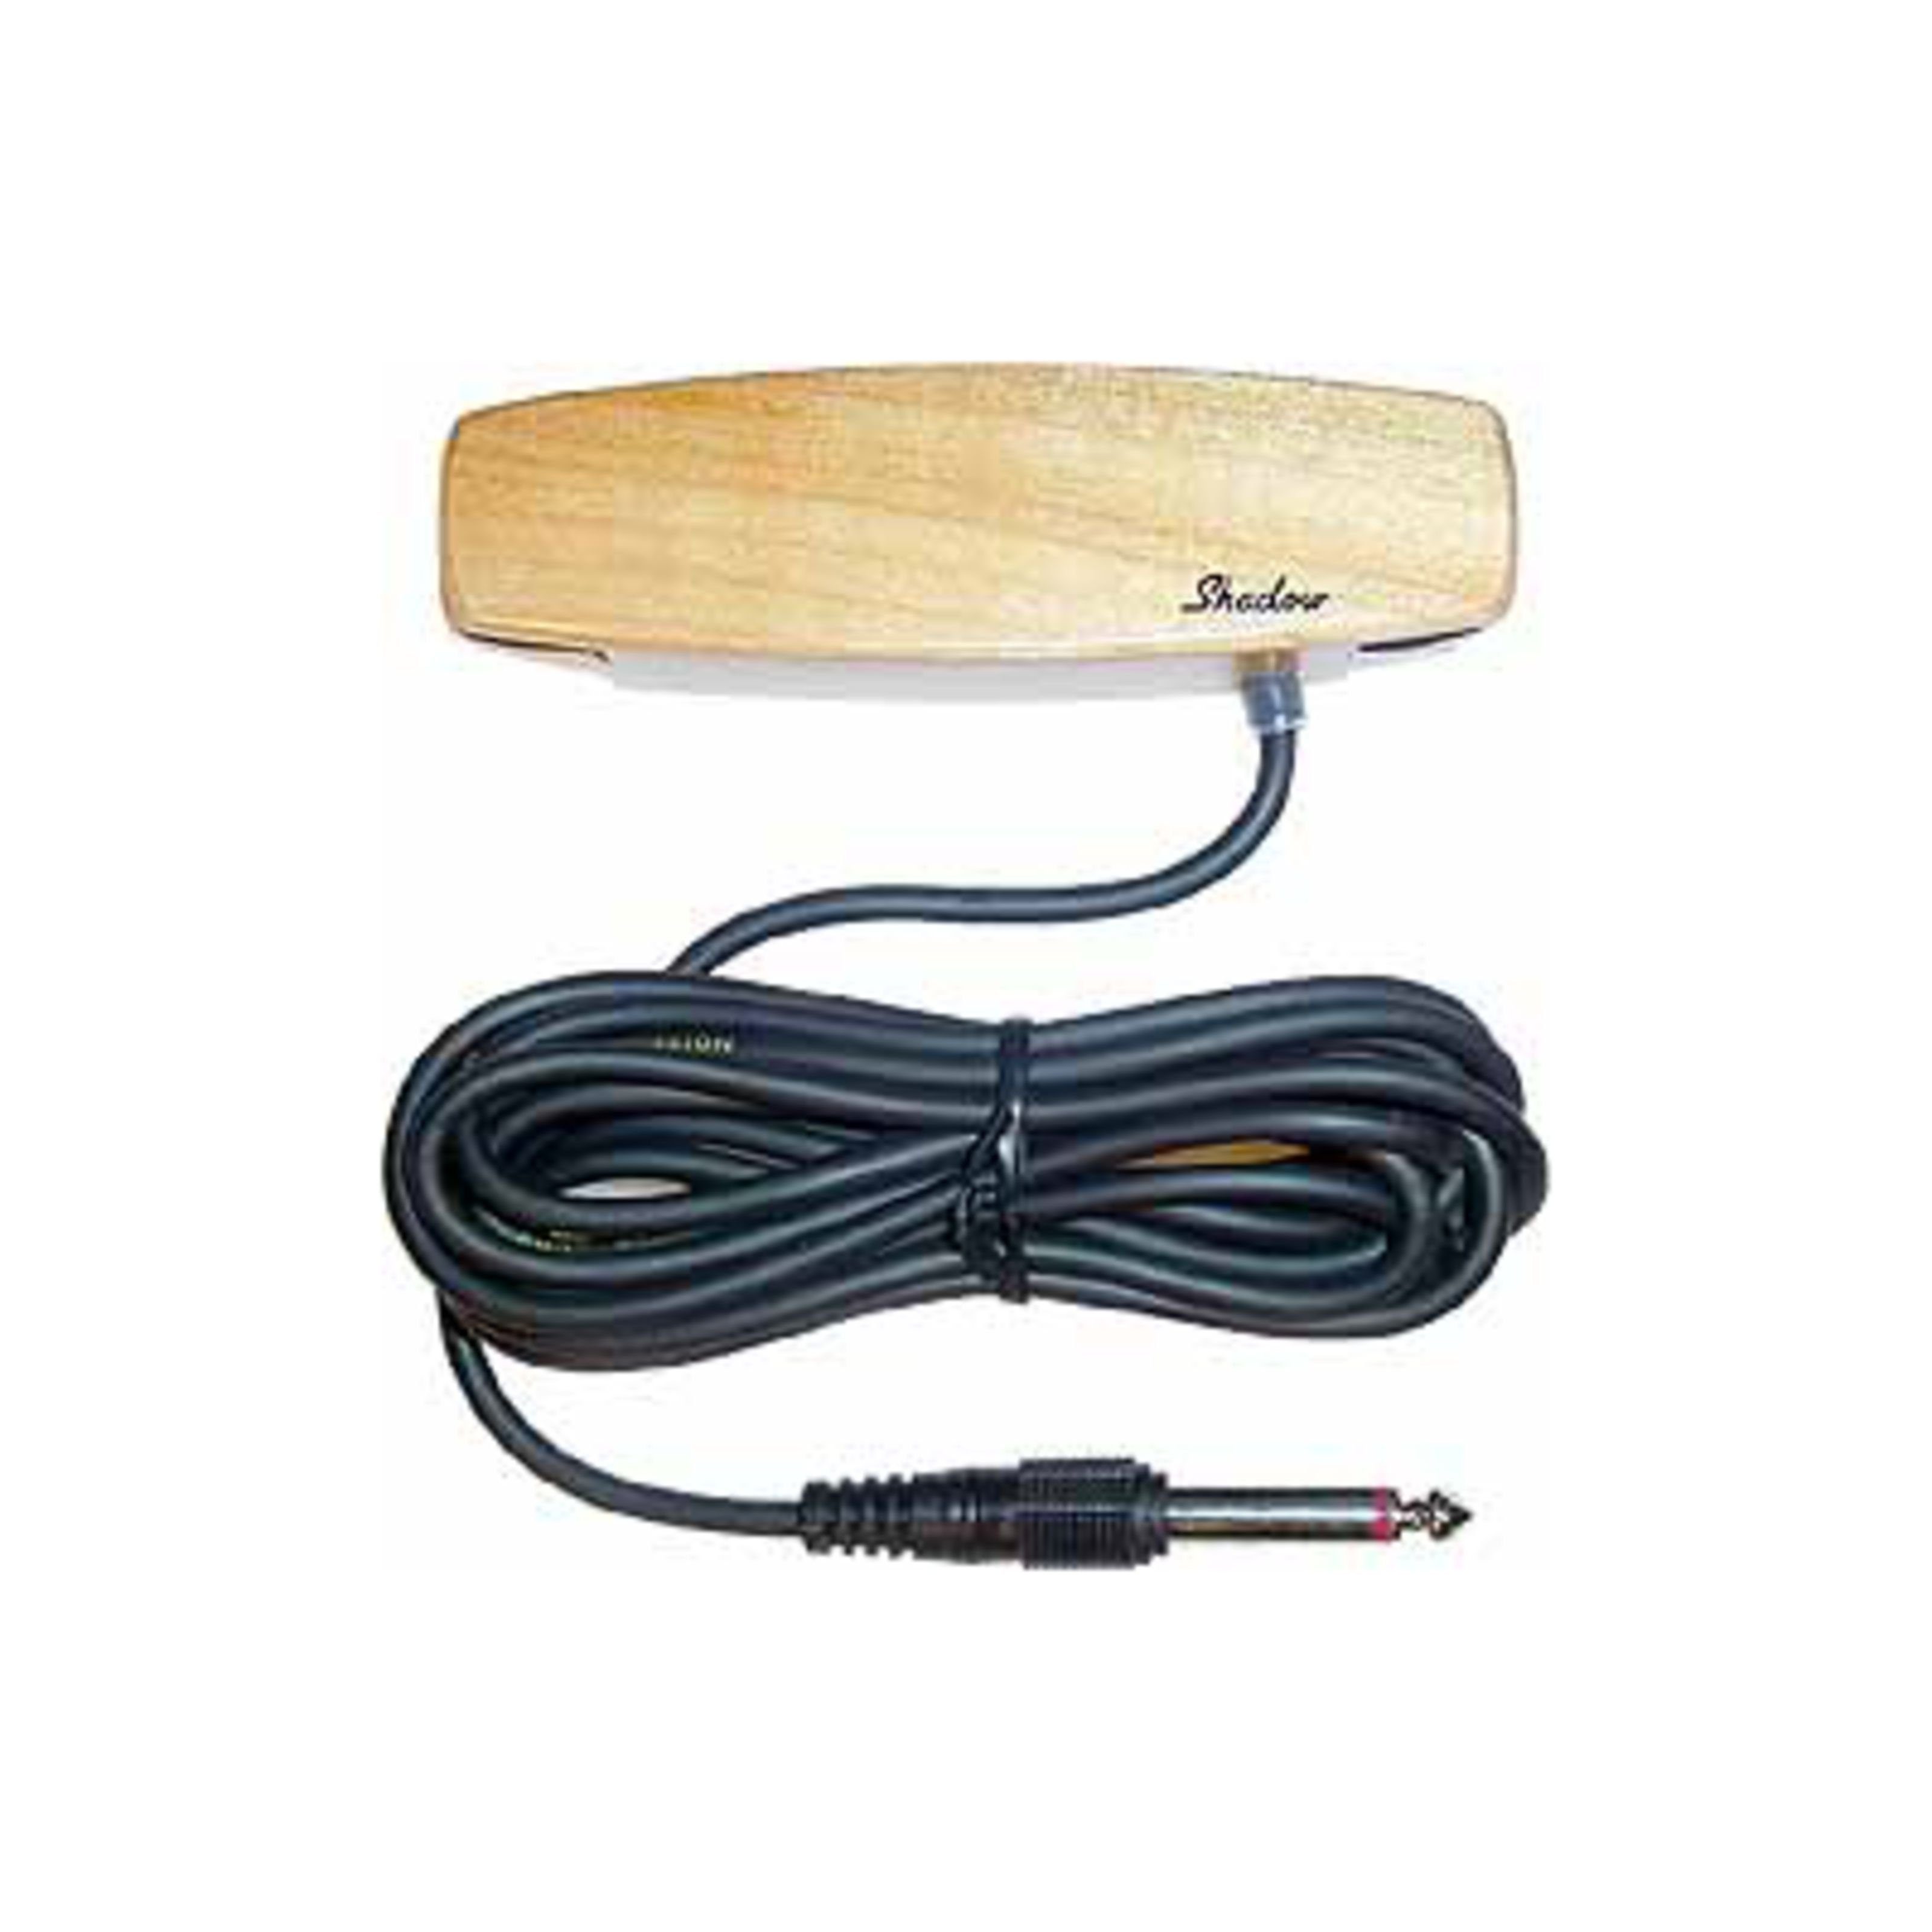 Shadow Tonabnehmer, (330 Schalloch Magnet PU Holz Singlecoil), 330 Schalloch Magnet PU Holz Singlecoil - Tonabnehmer für Westerngit